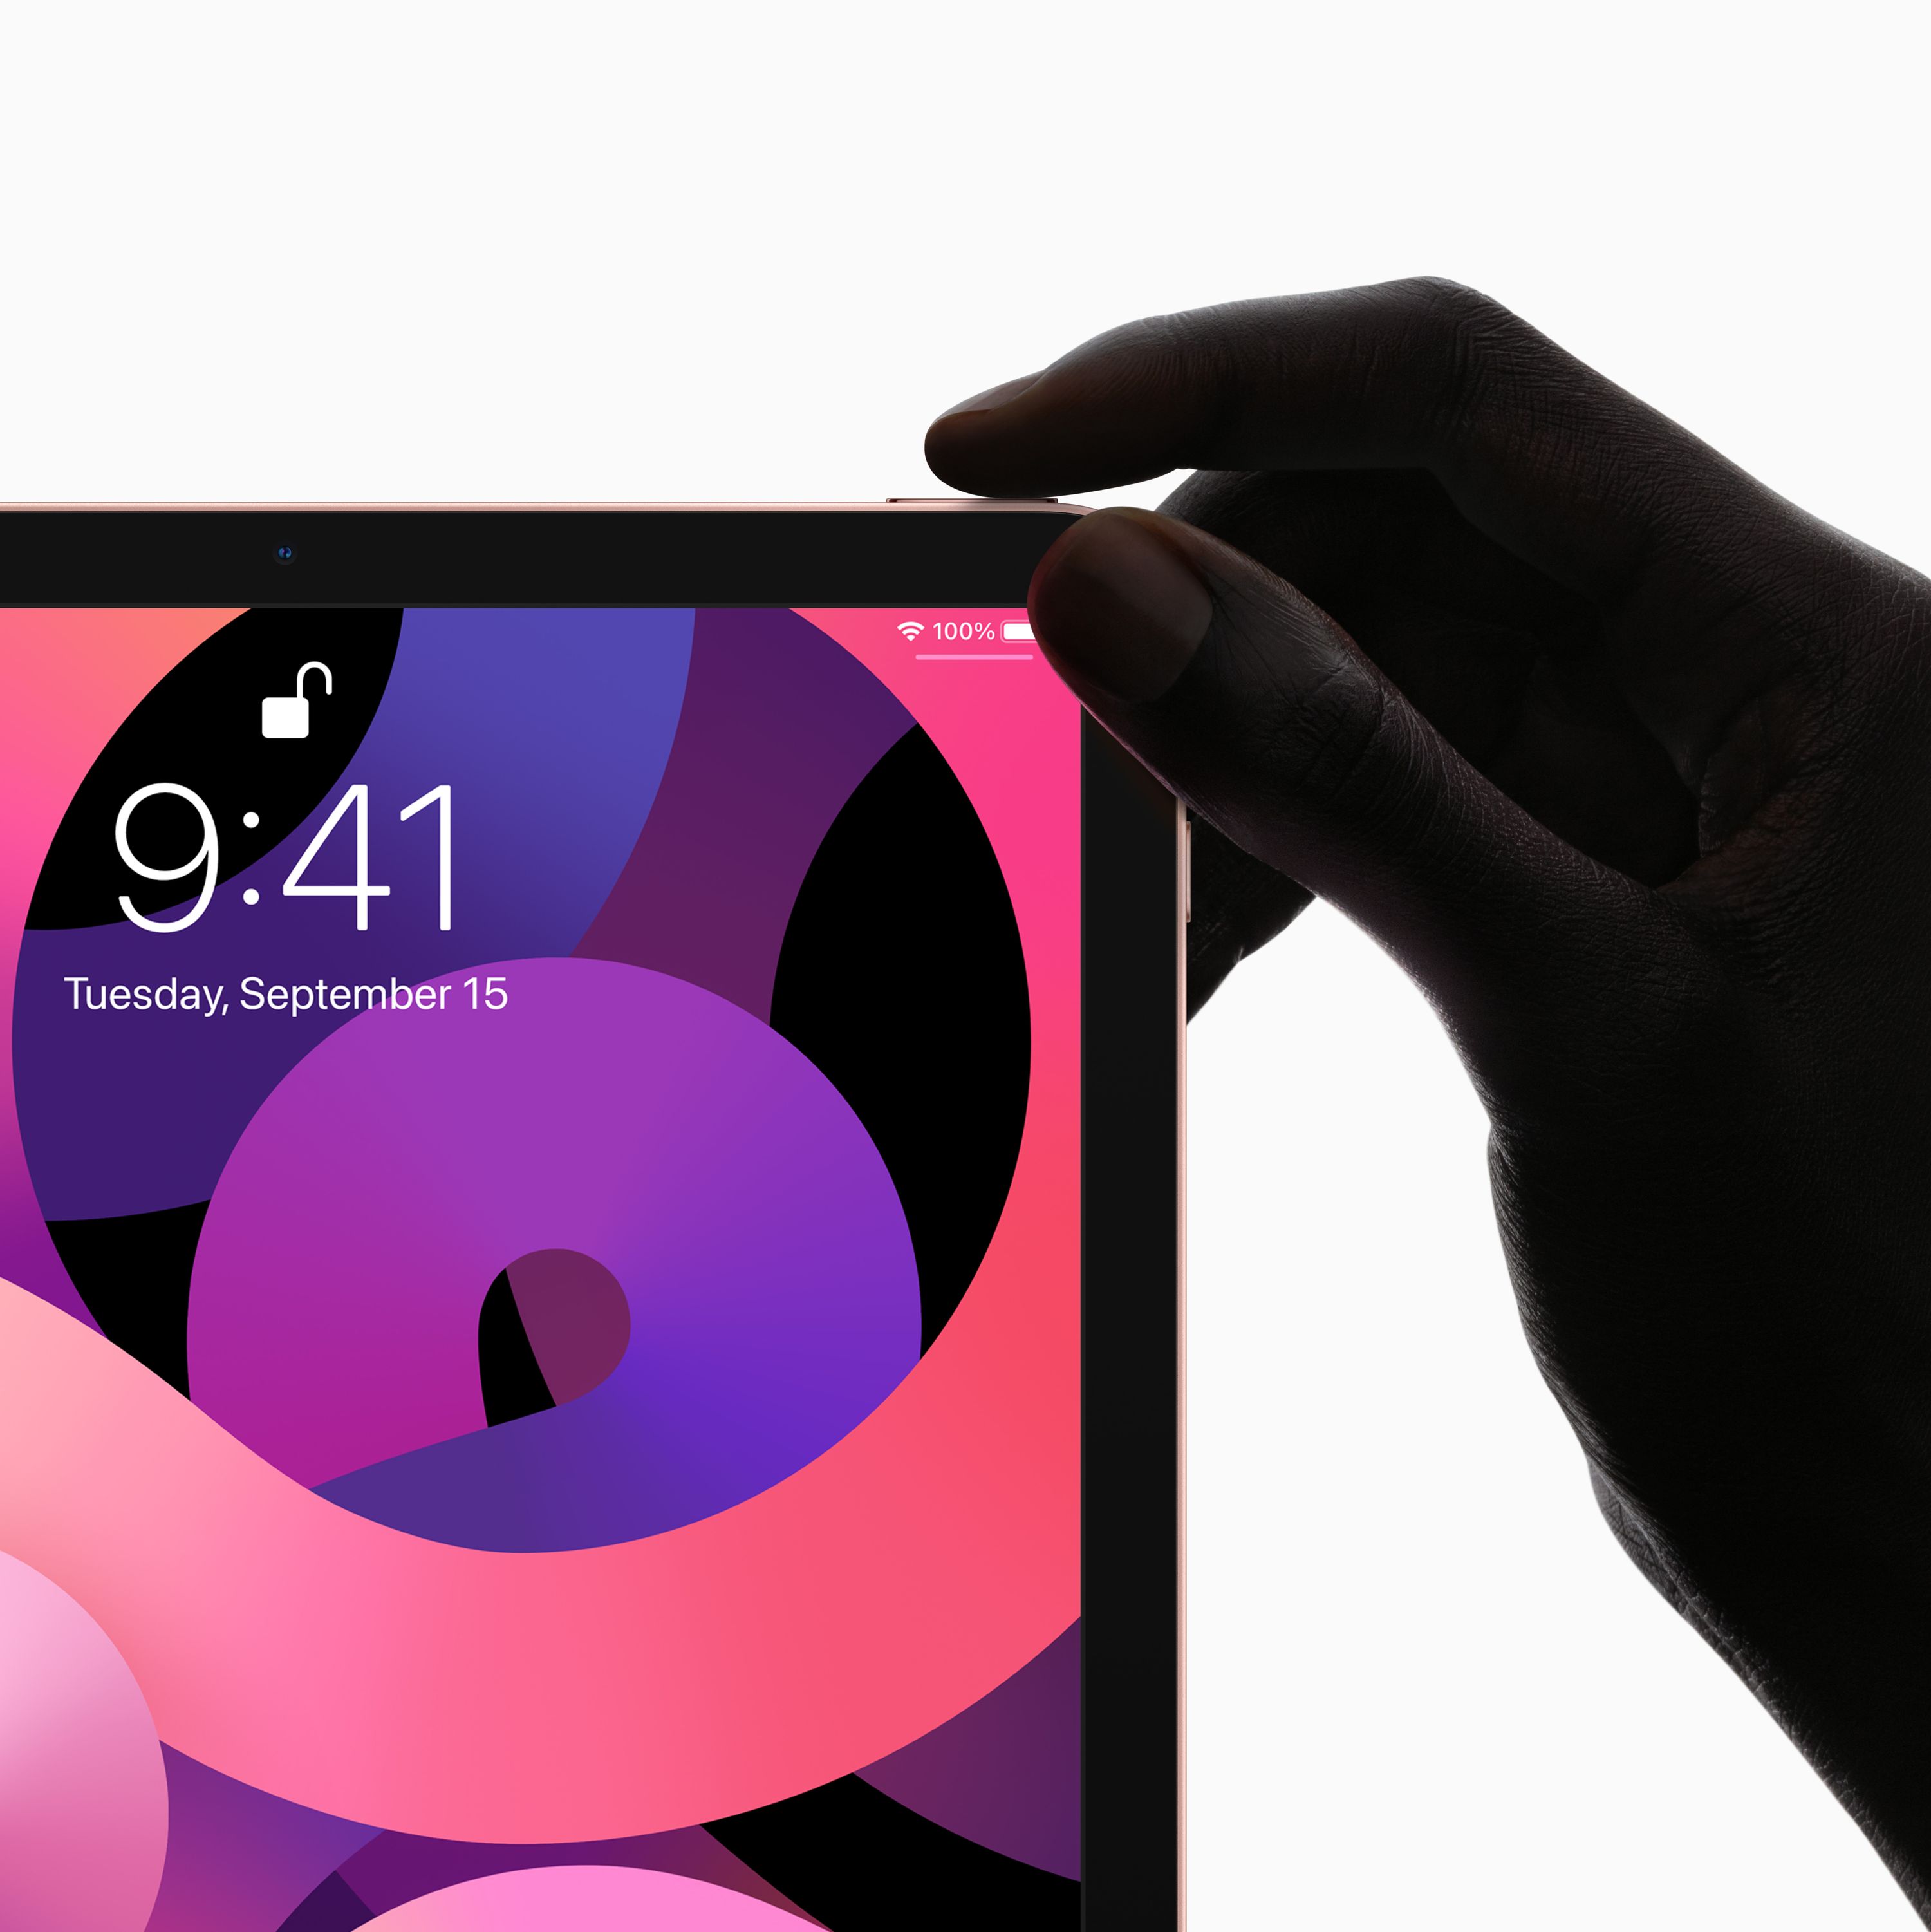 Novo iPad Air 5 deve chegar em 2022, sem grandes novidades